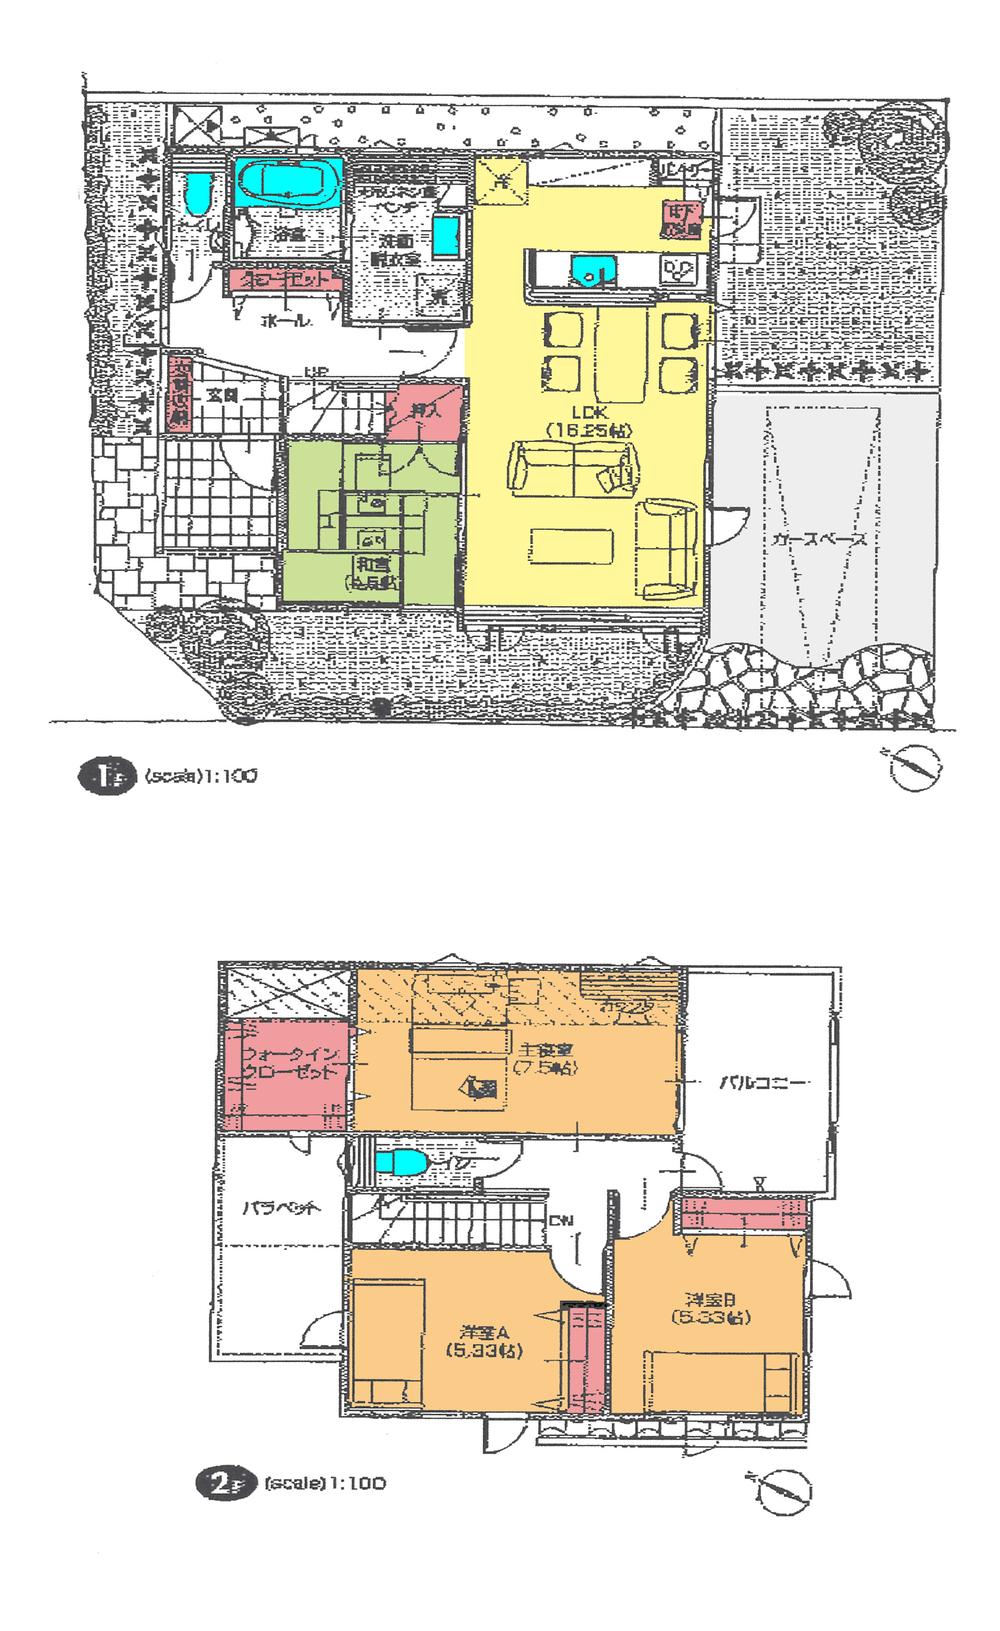 Floor plan. 31,800,000 yen, 4LDK, Land area 124.22 sq m , Building area 99.14 sq m floor plan